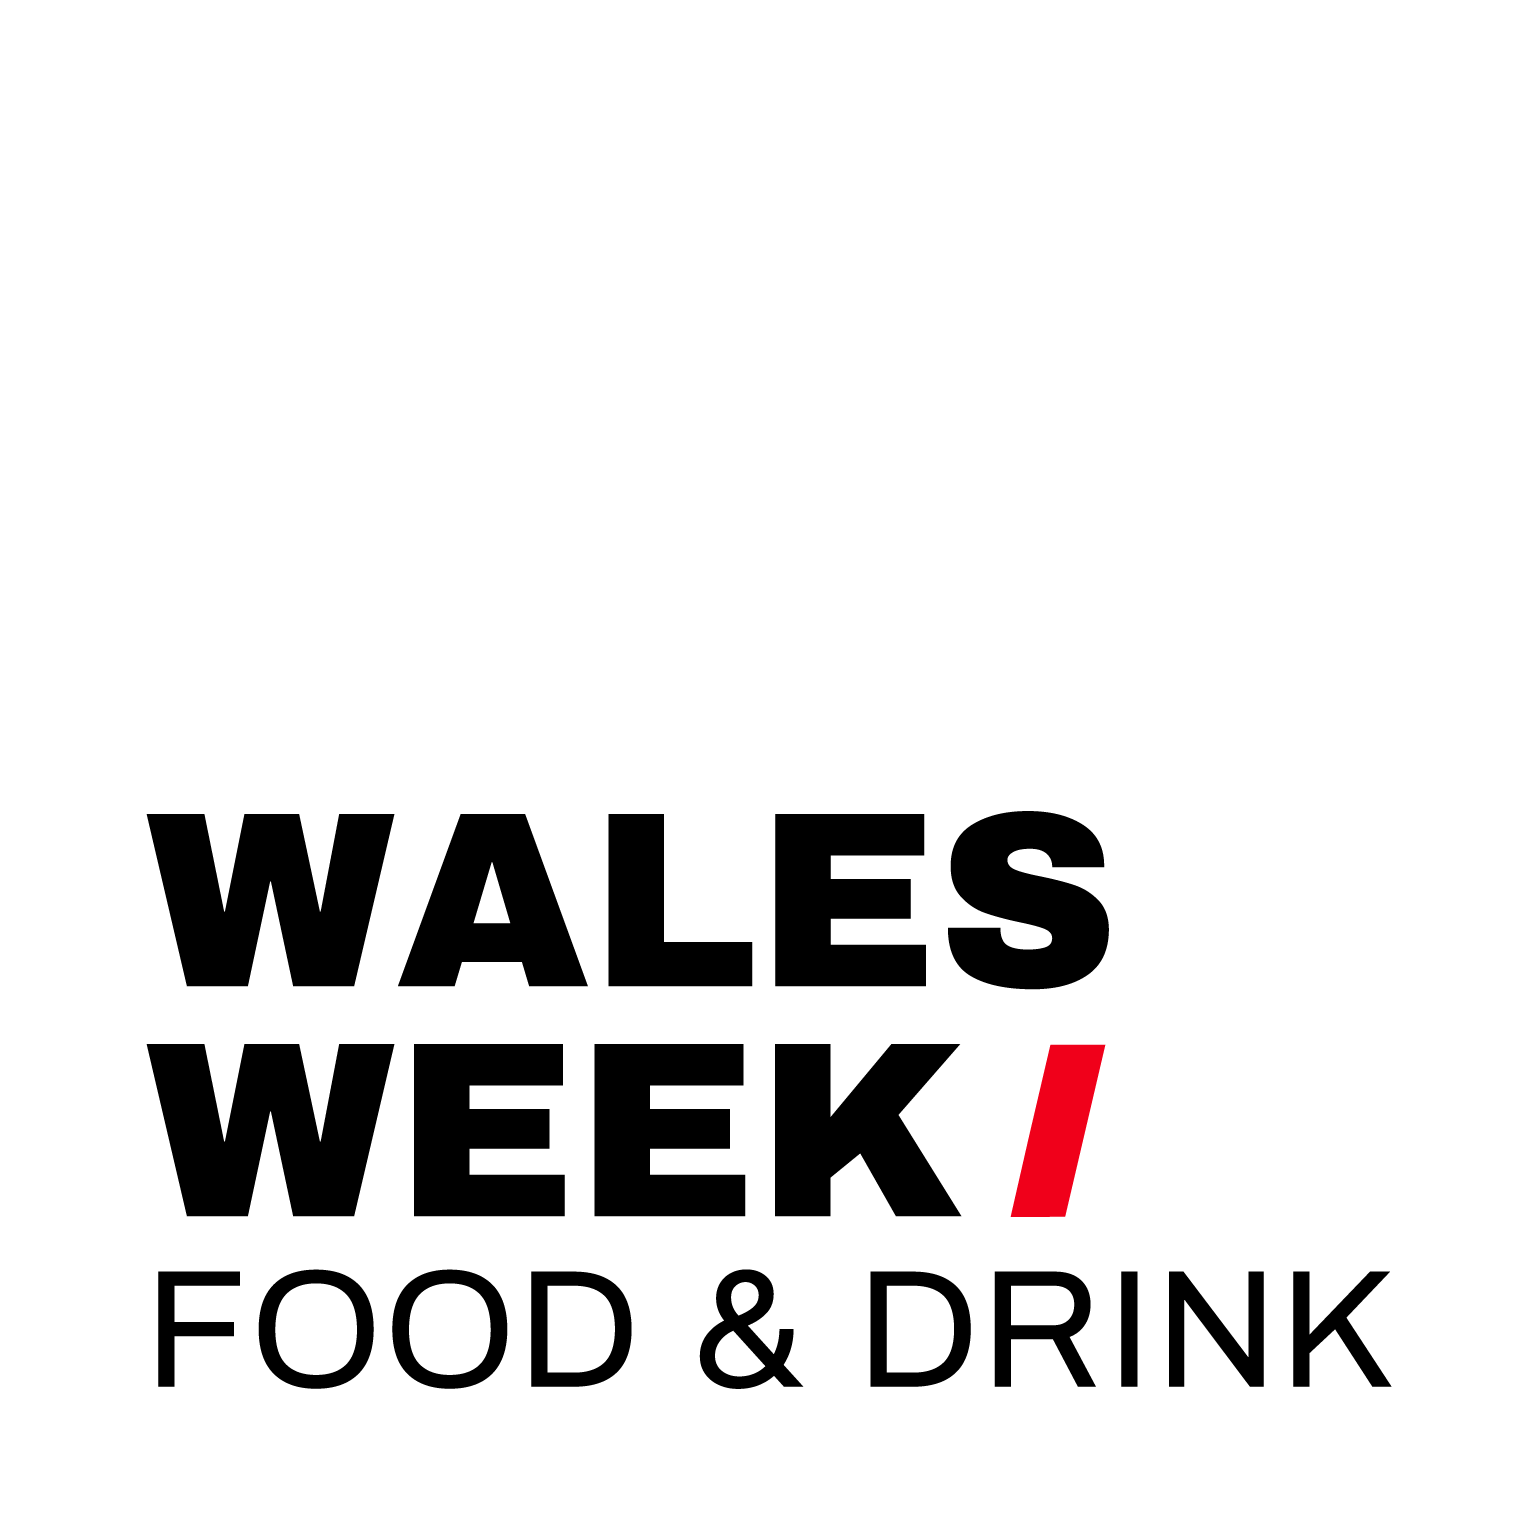 Wales Week Food & Drink Logo